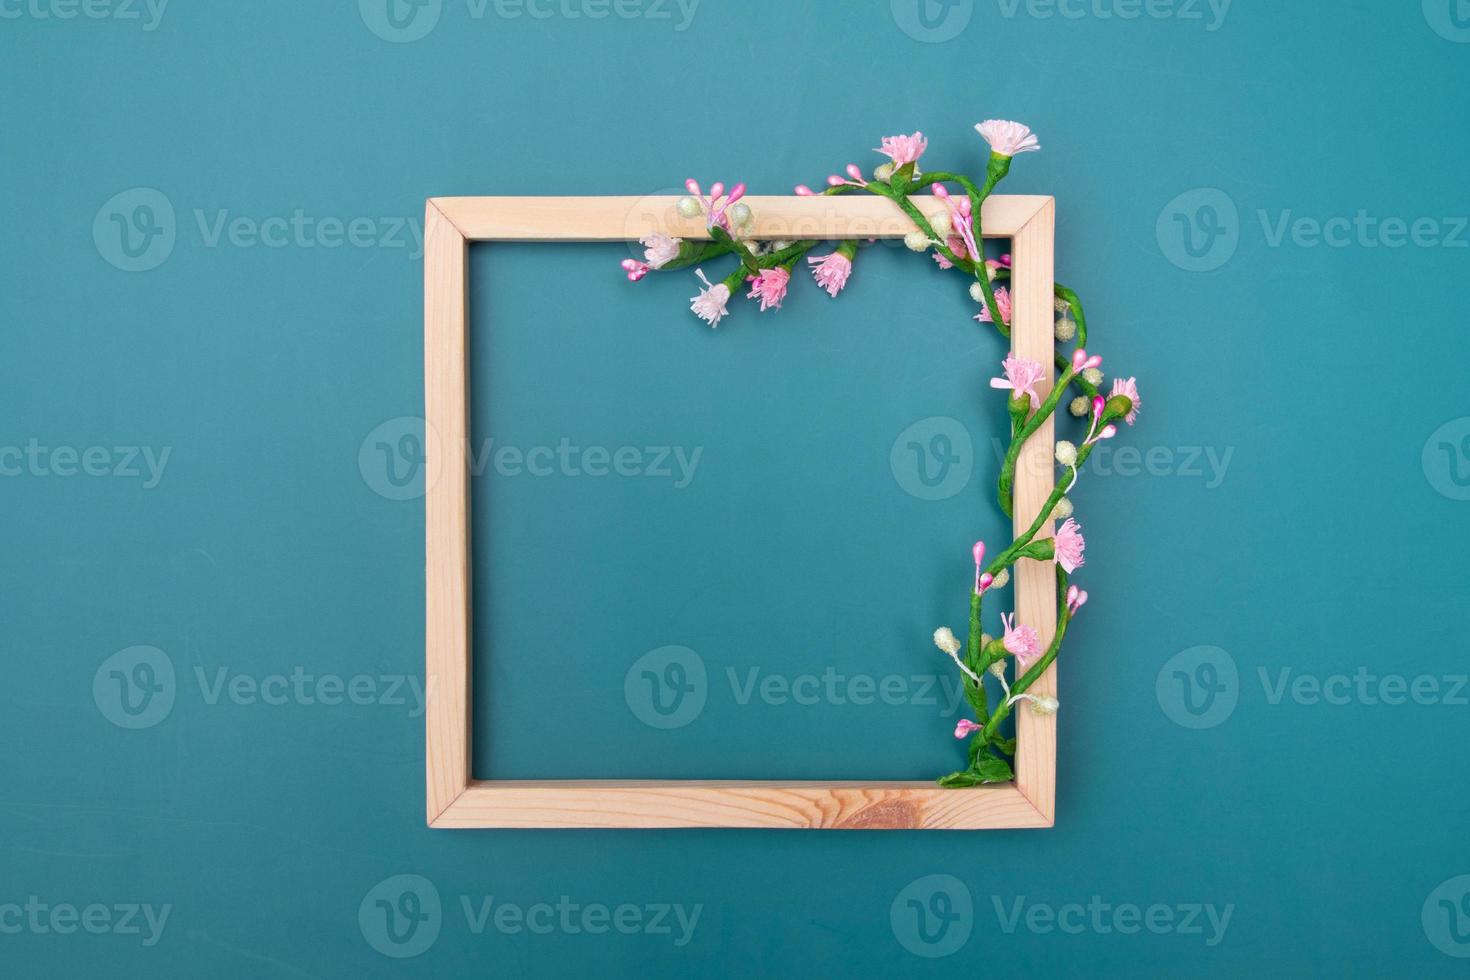 vierkante houten frame mock-up met decoratieve bloemen ornamenten met kopie ruimte bovenaanzicht foto